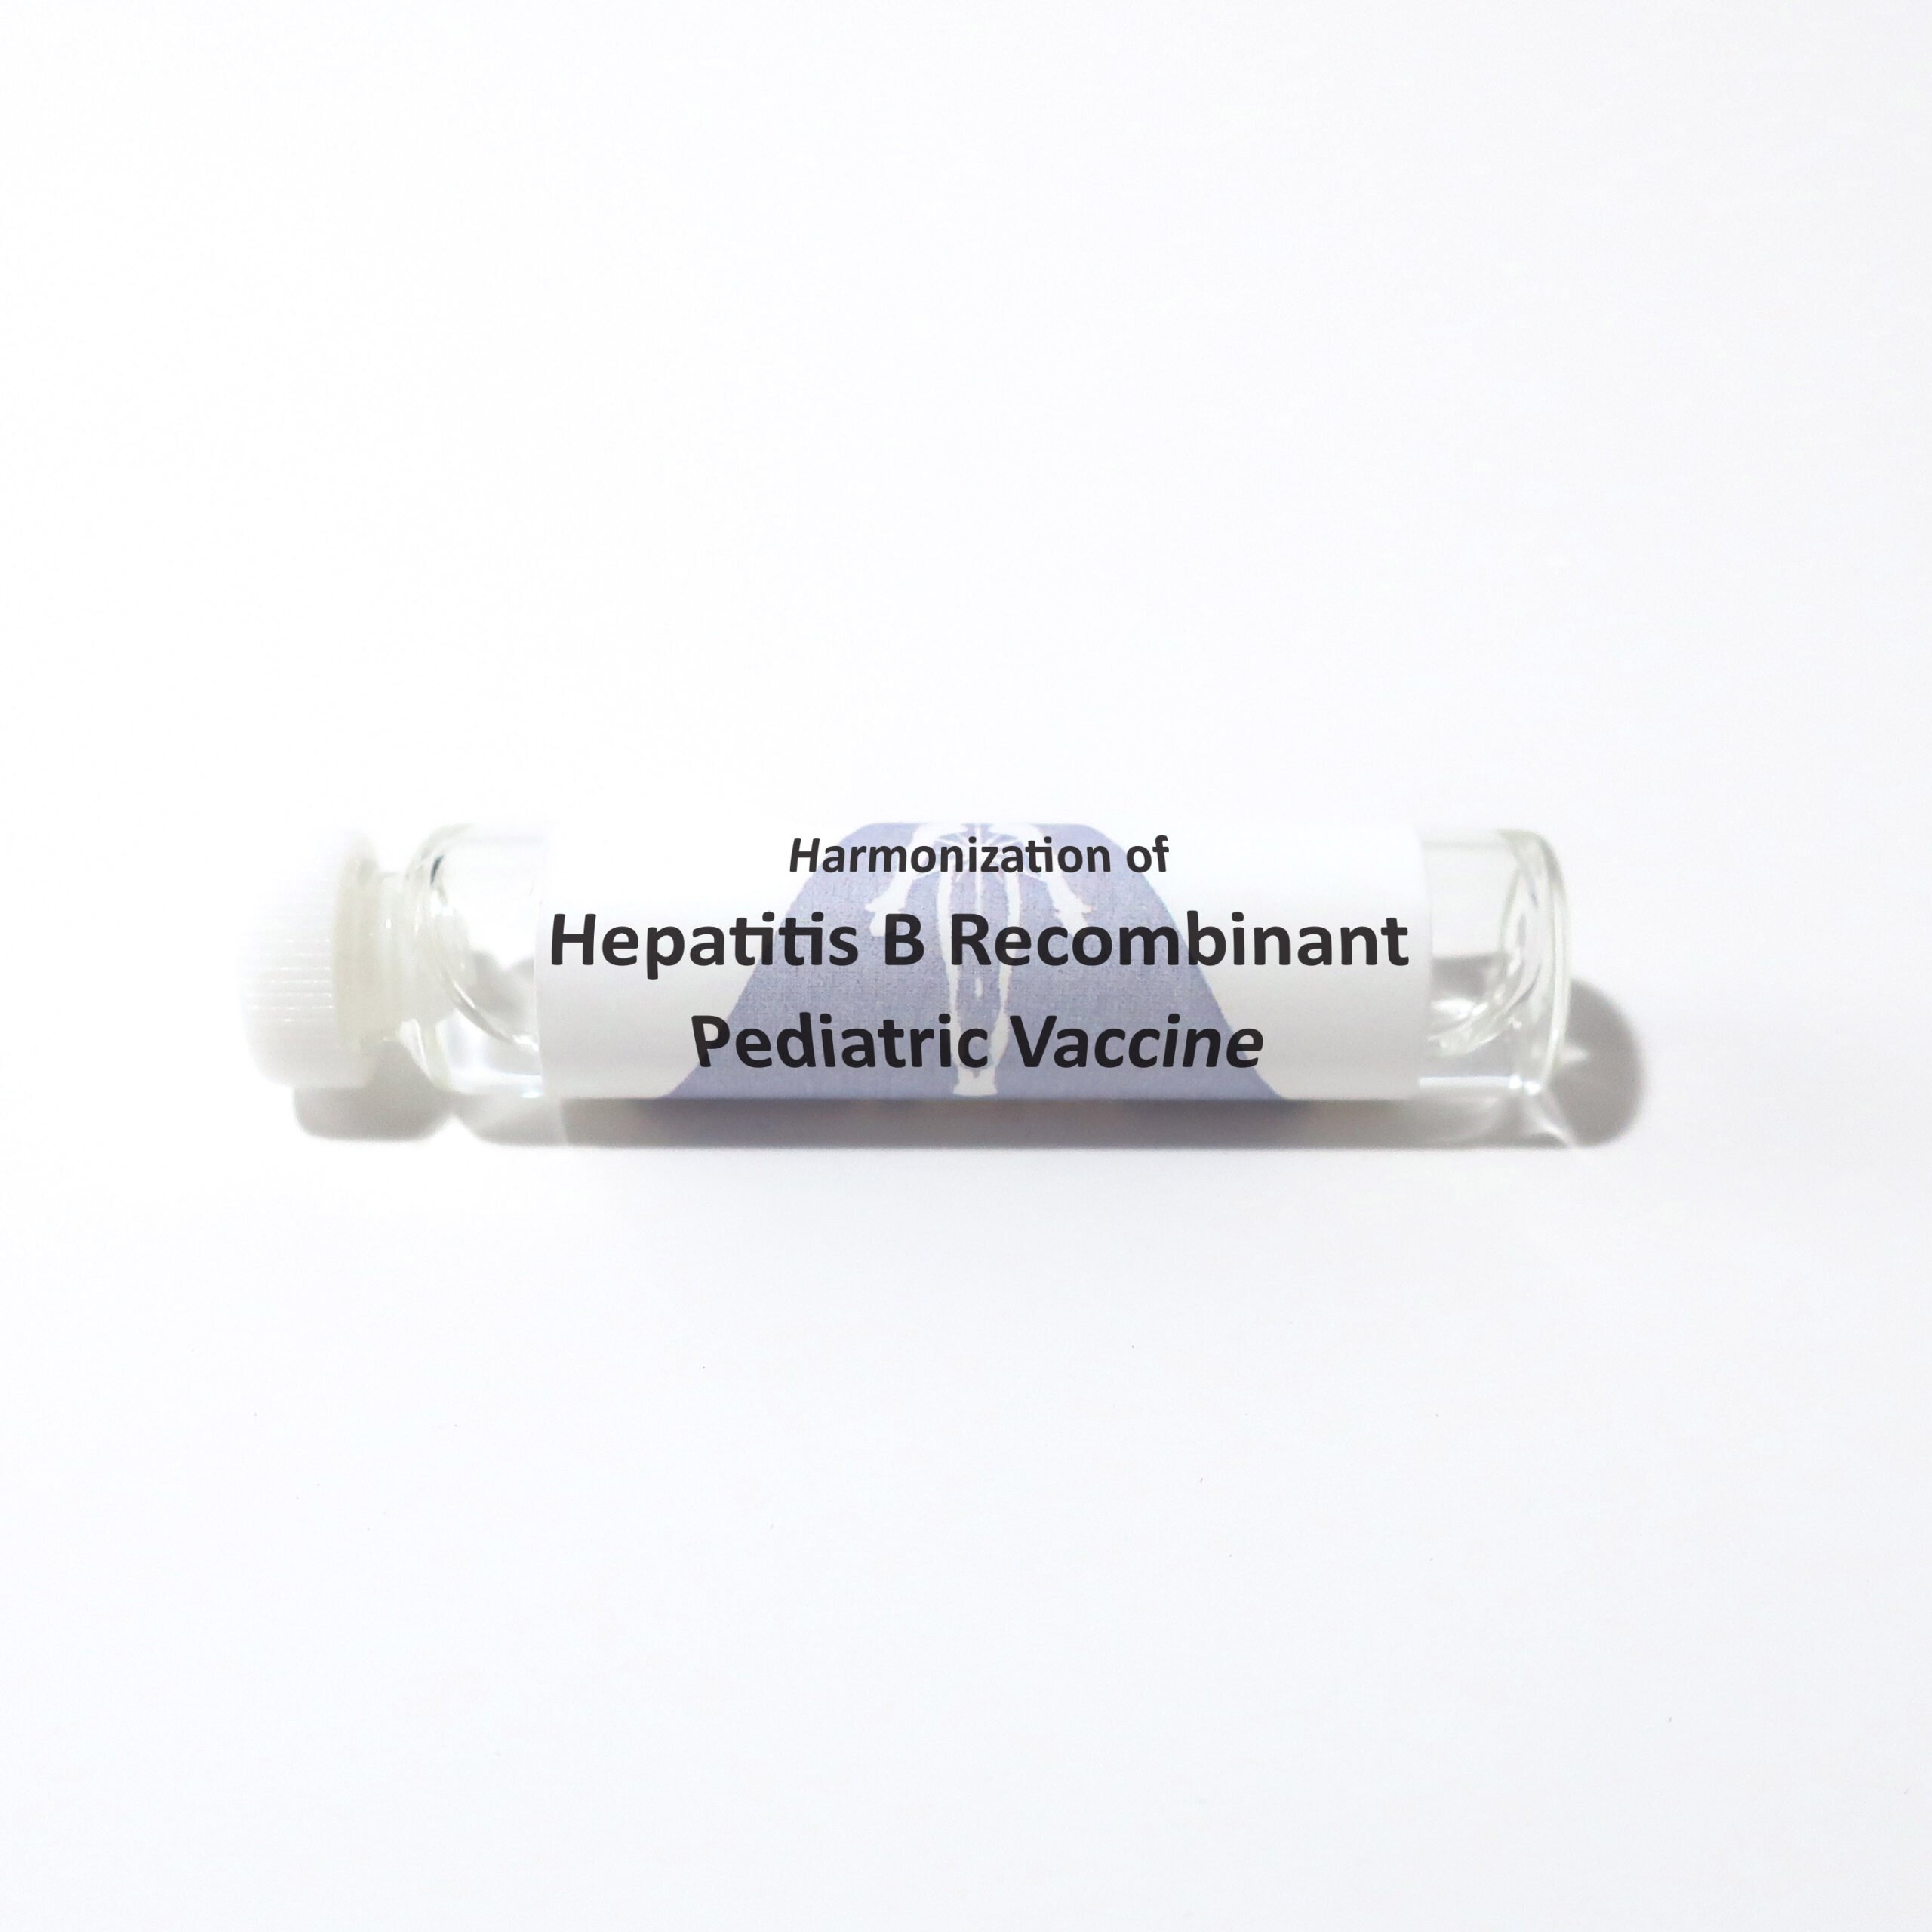 Hepatitis B Recombinant Pediatric Vaccine